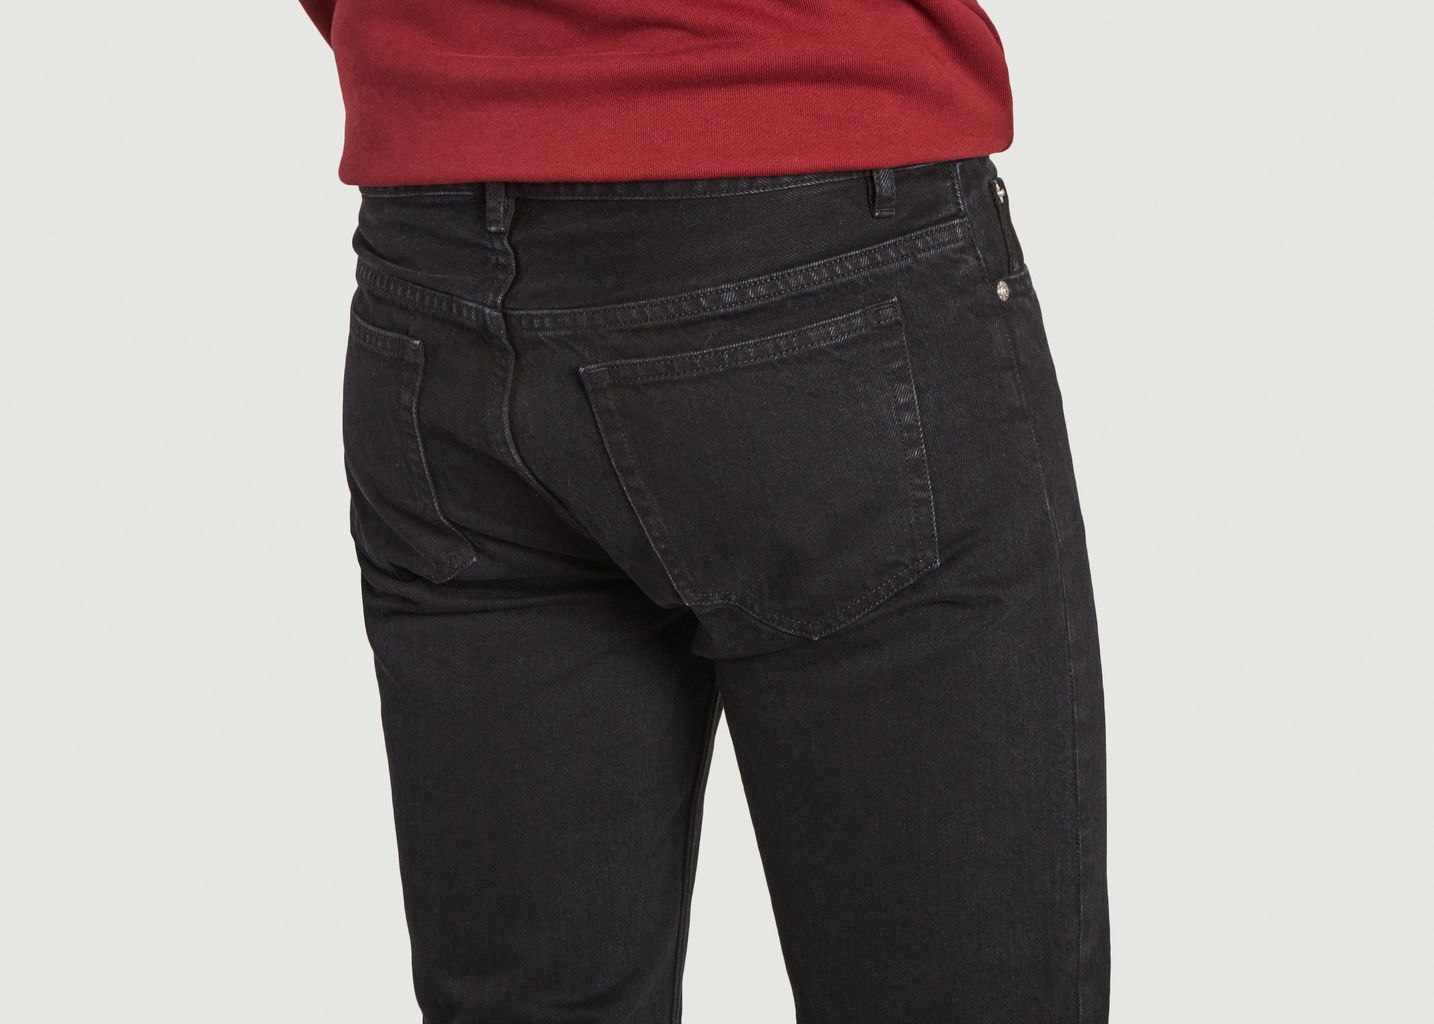 Petit New Standard cotton jeans - A.P.C.